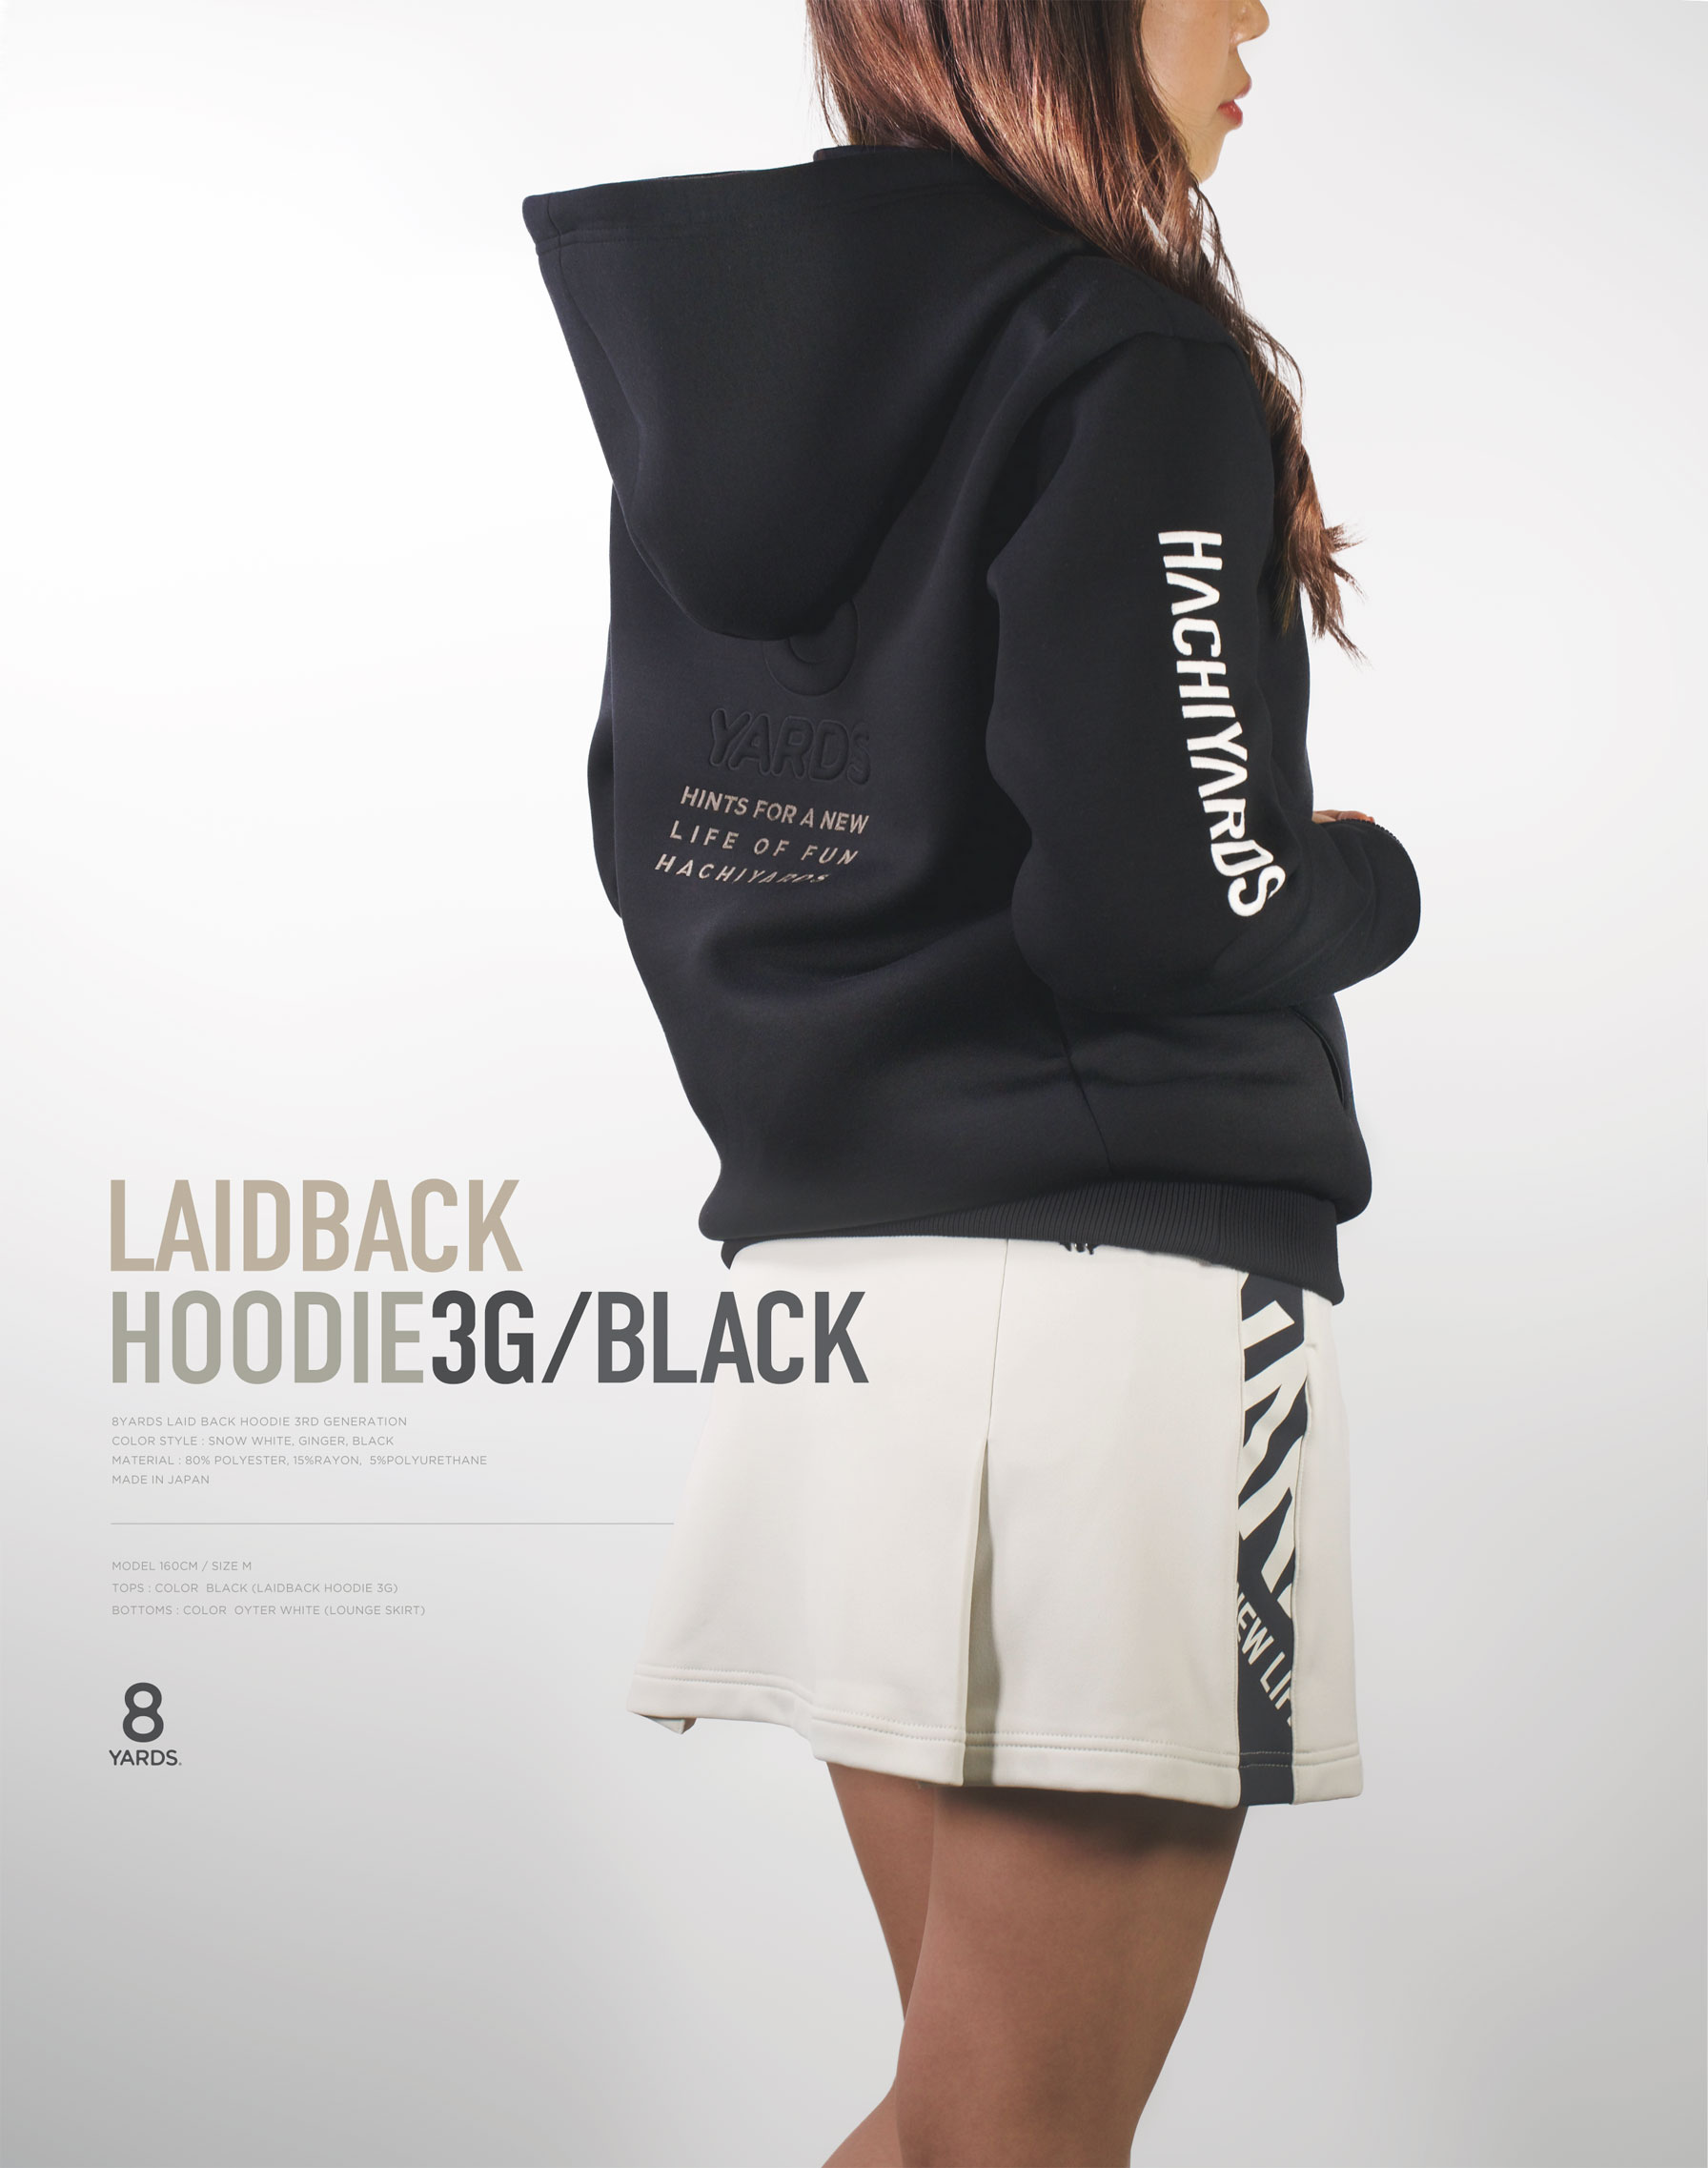 8yards　Women’s LaidBack Hoodie 3G素材